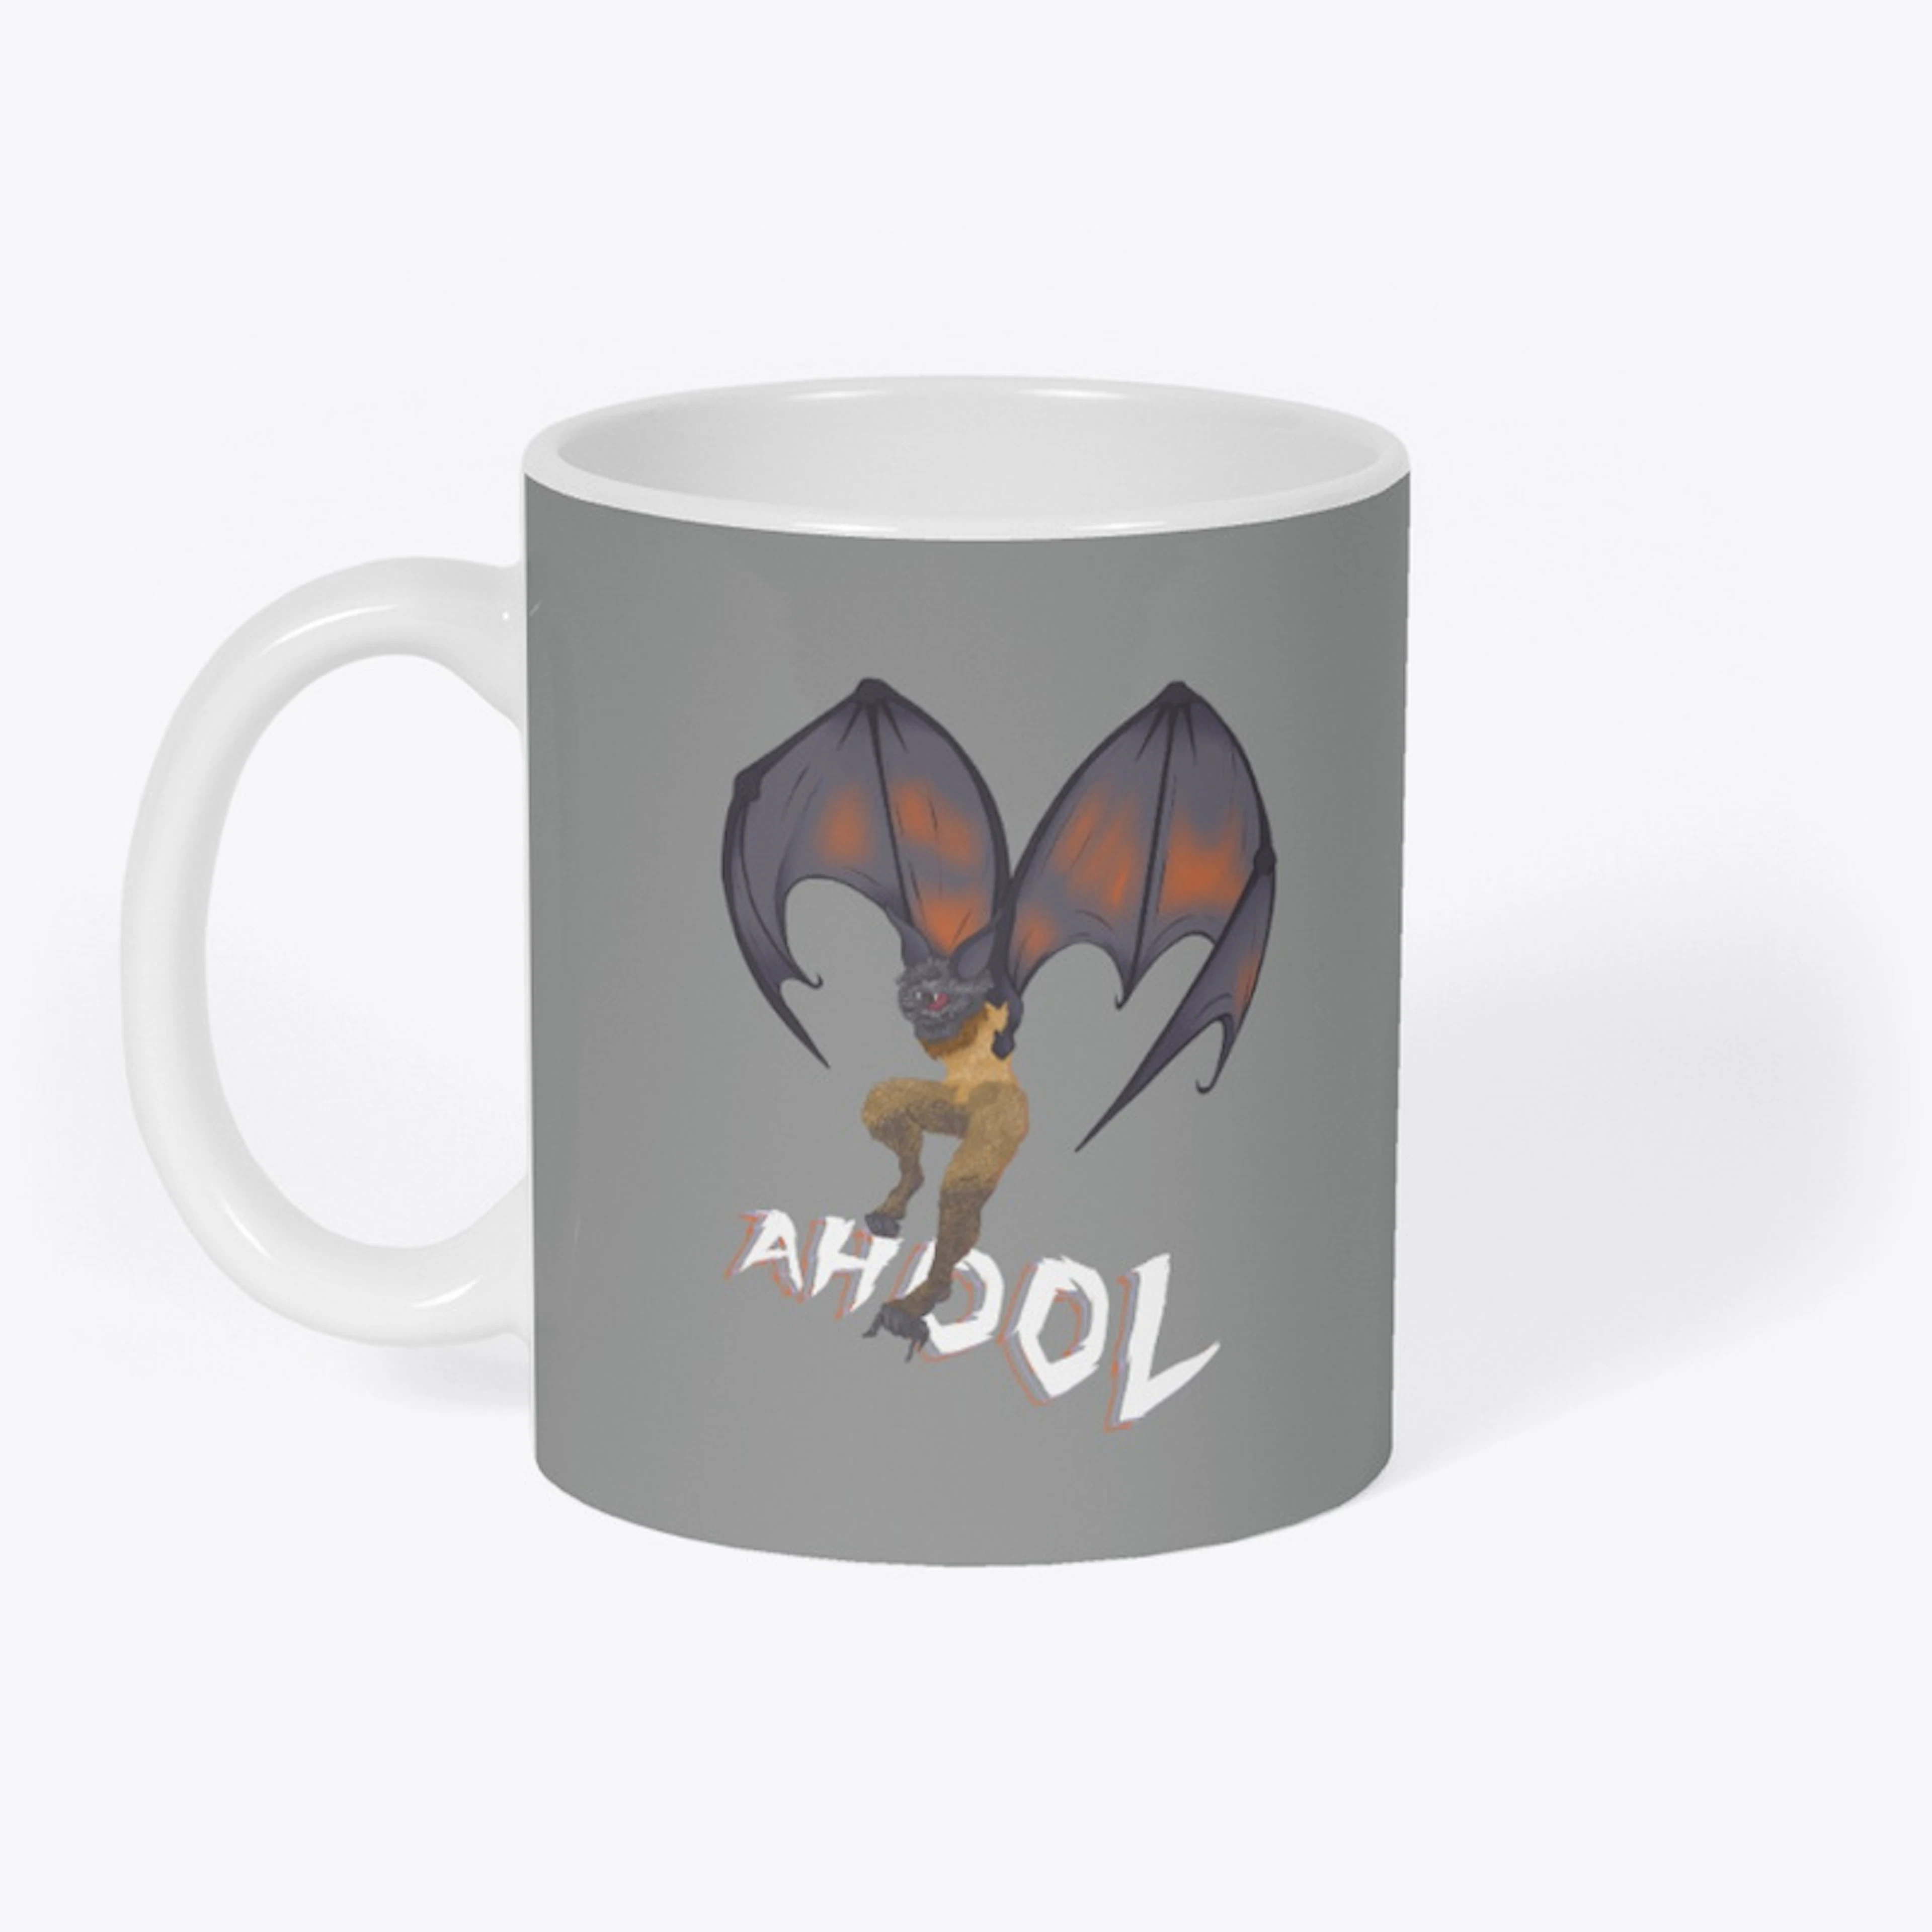 Ahool Coffee Mug